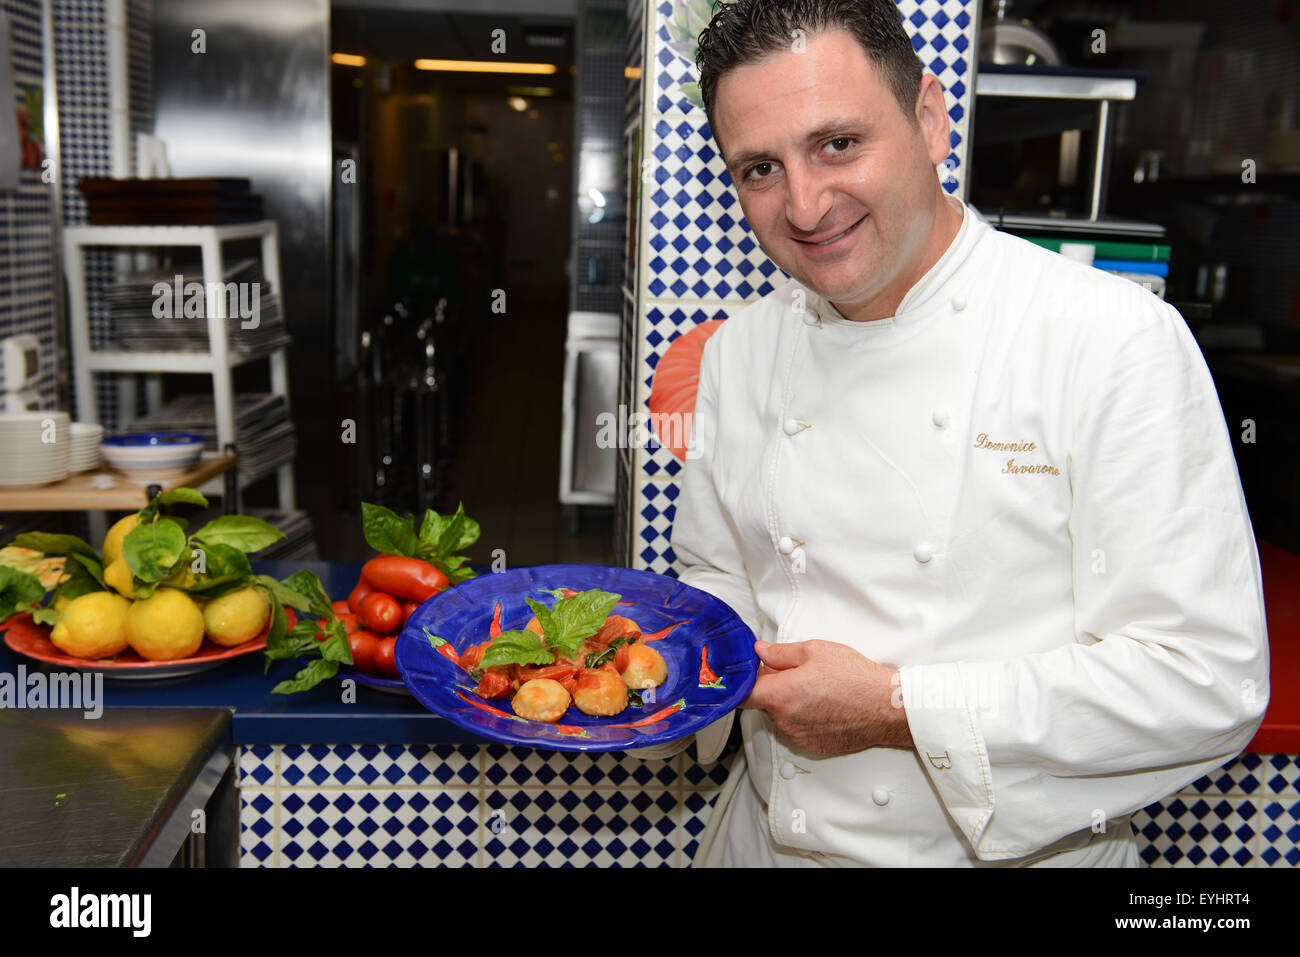 El chef Domenico Lavarone del Maxi restaurante presentando uno de sus platos de firma- Ravioles cocidos en salsa de San Marzano. Foto de stock